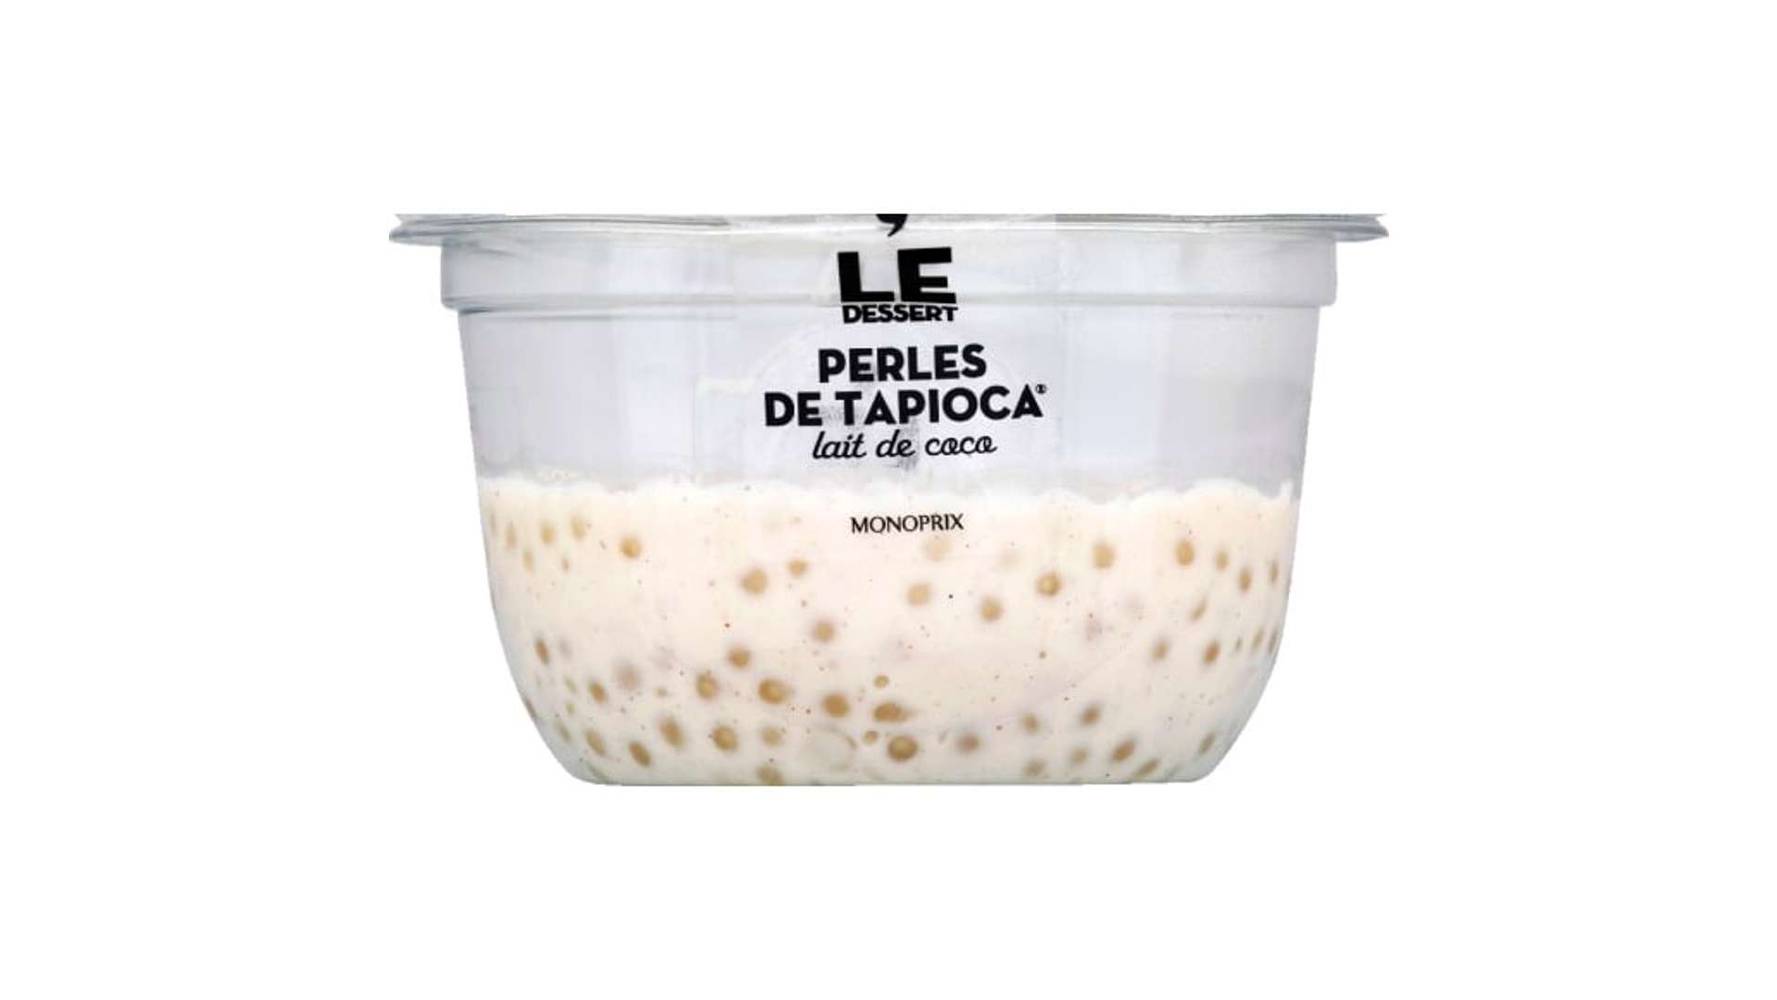 Monoprix Perles de tapioca lait de coco - Le Dessert Le pot de 120 g